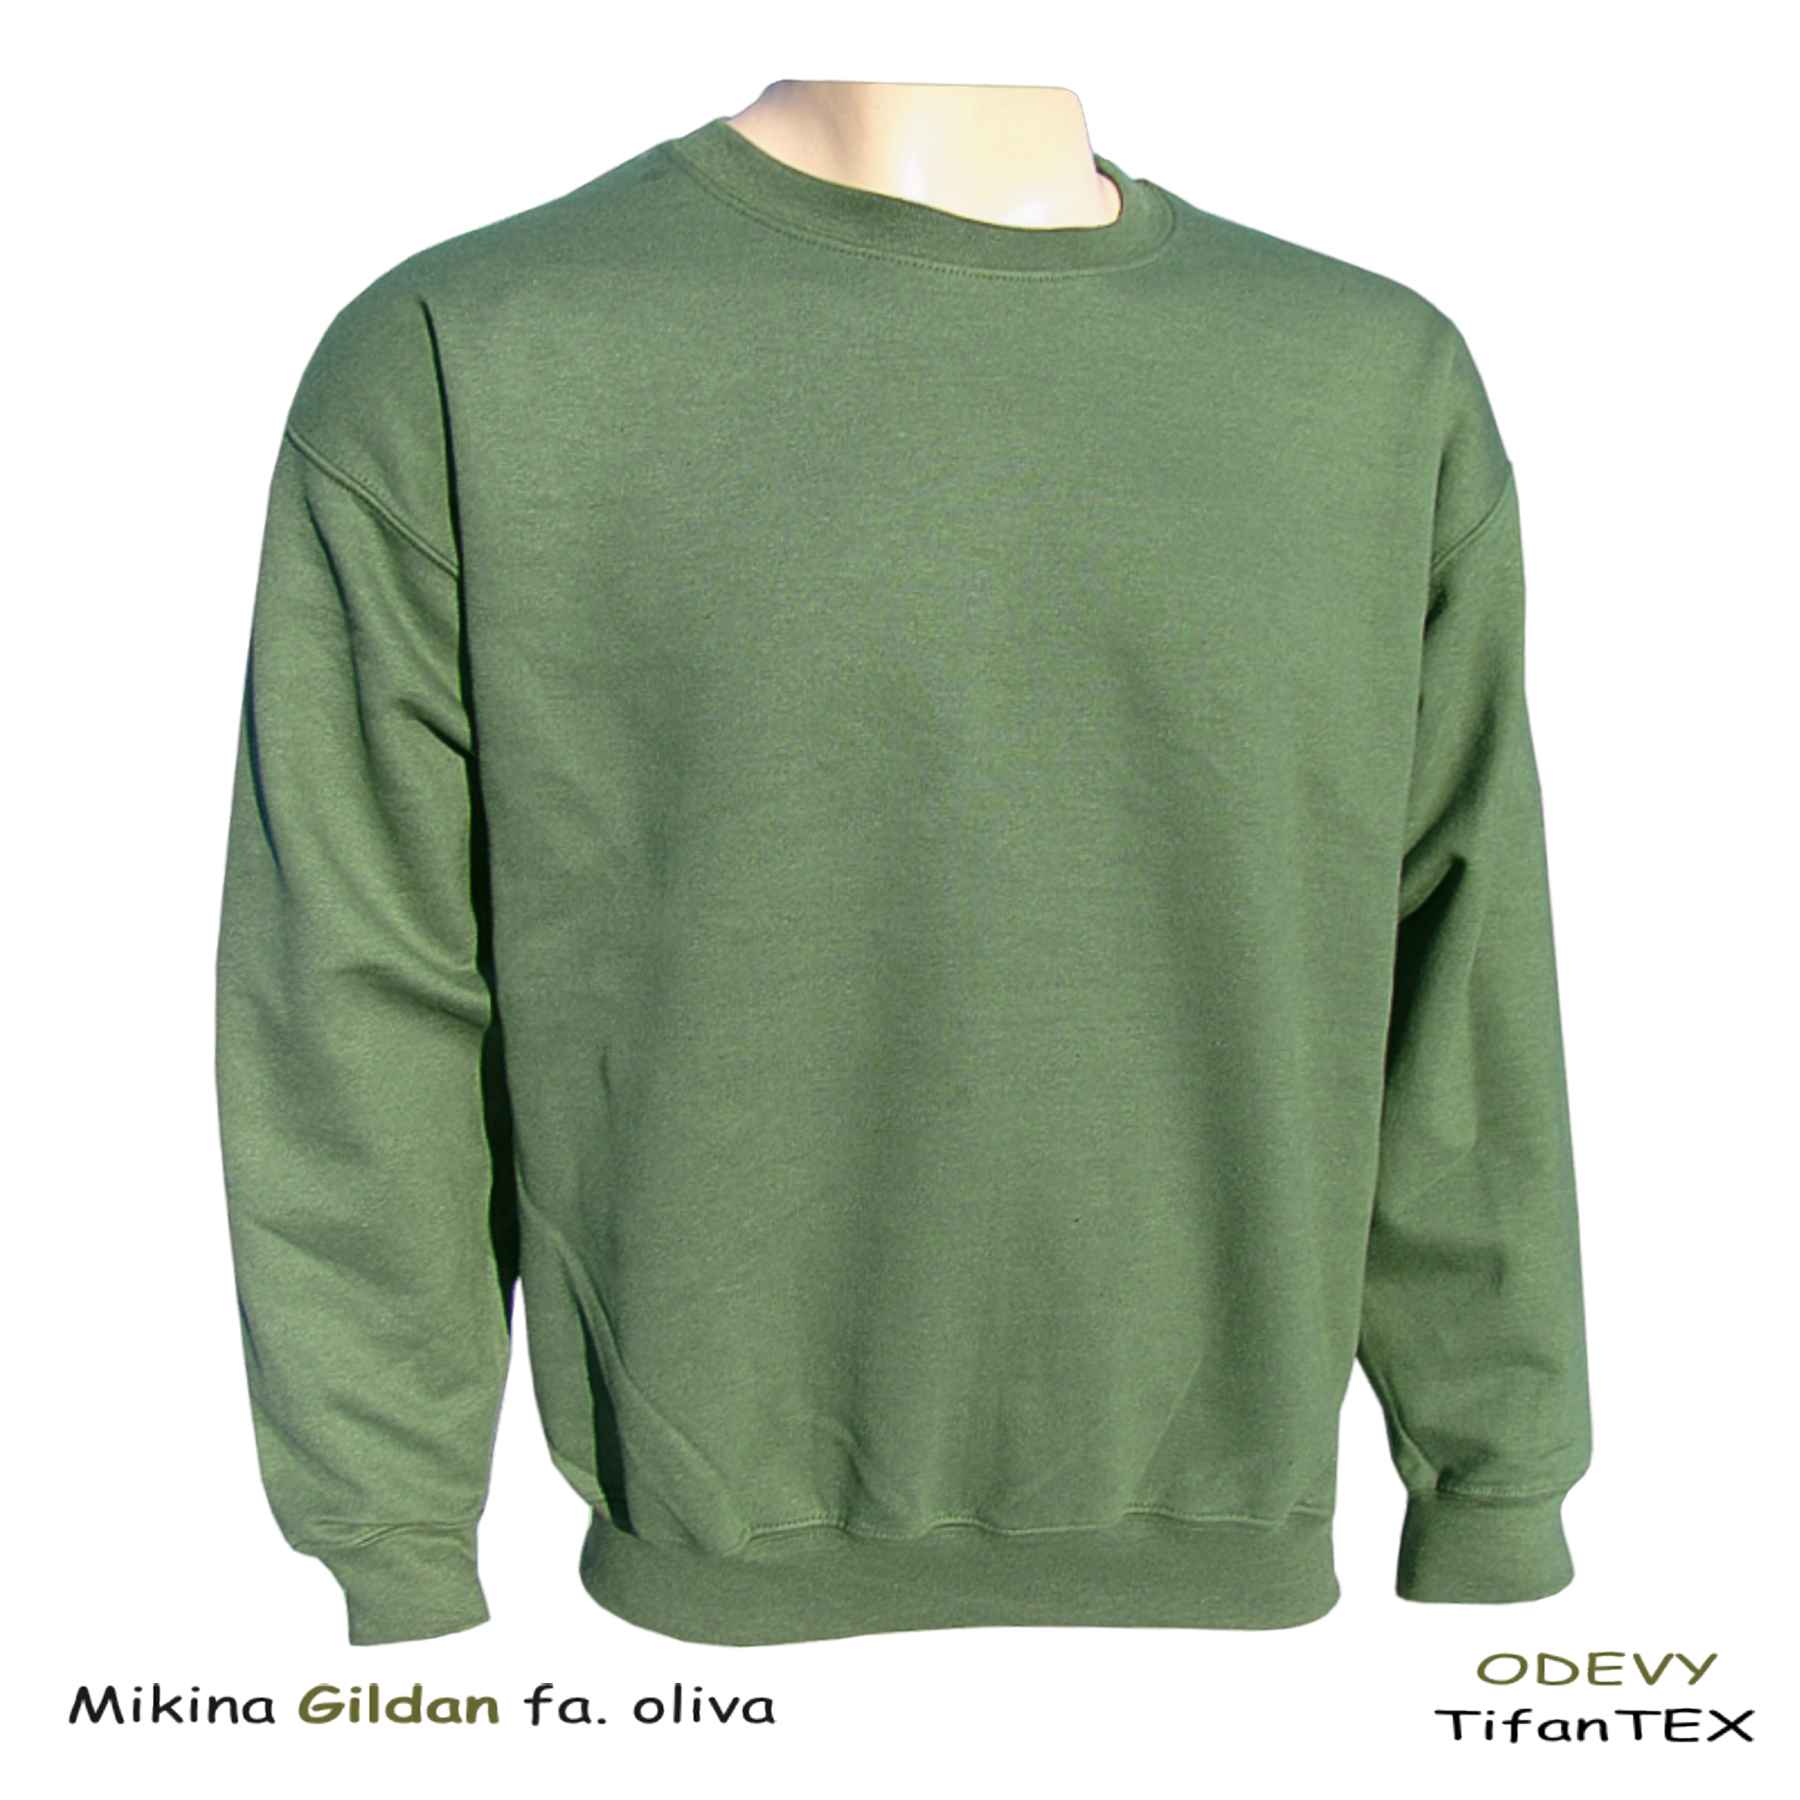 Úpletová mikina pánska Gildan zelená army, Tifantex veľkoobchod